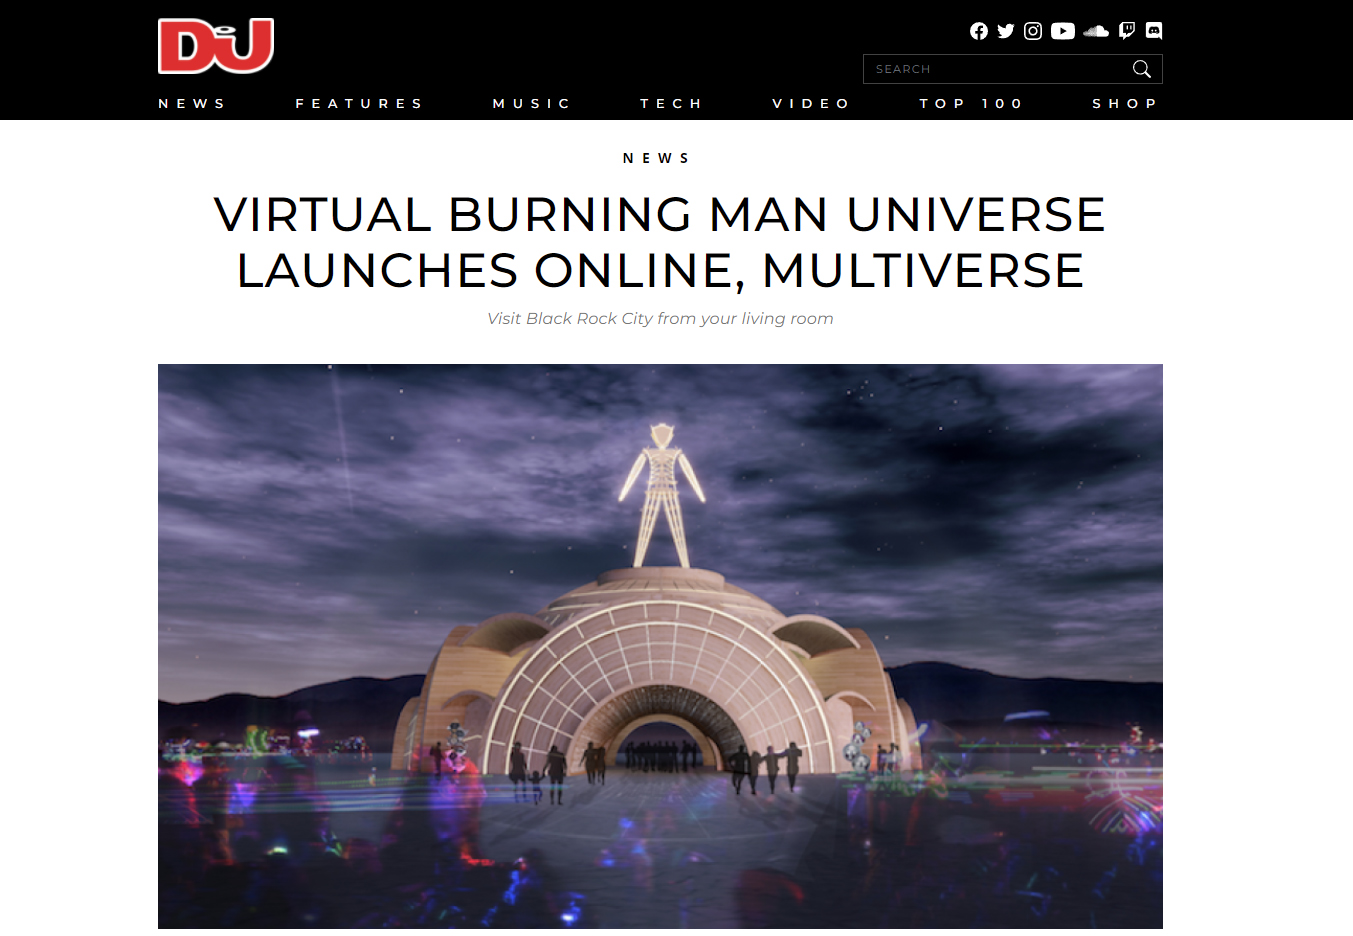 Multiverse in Burning Man Journal